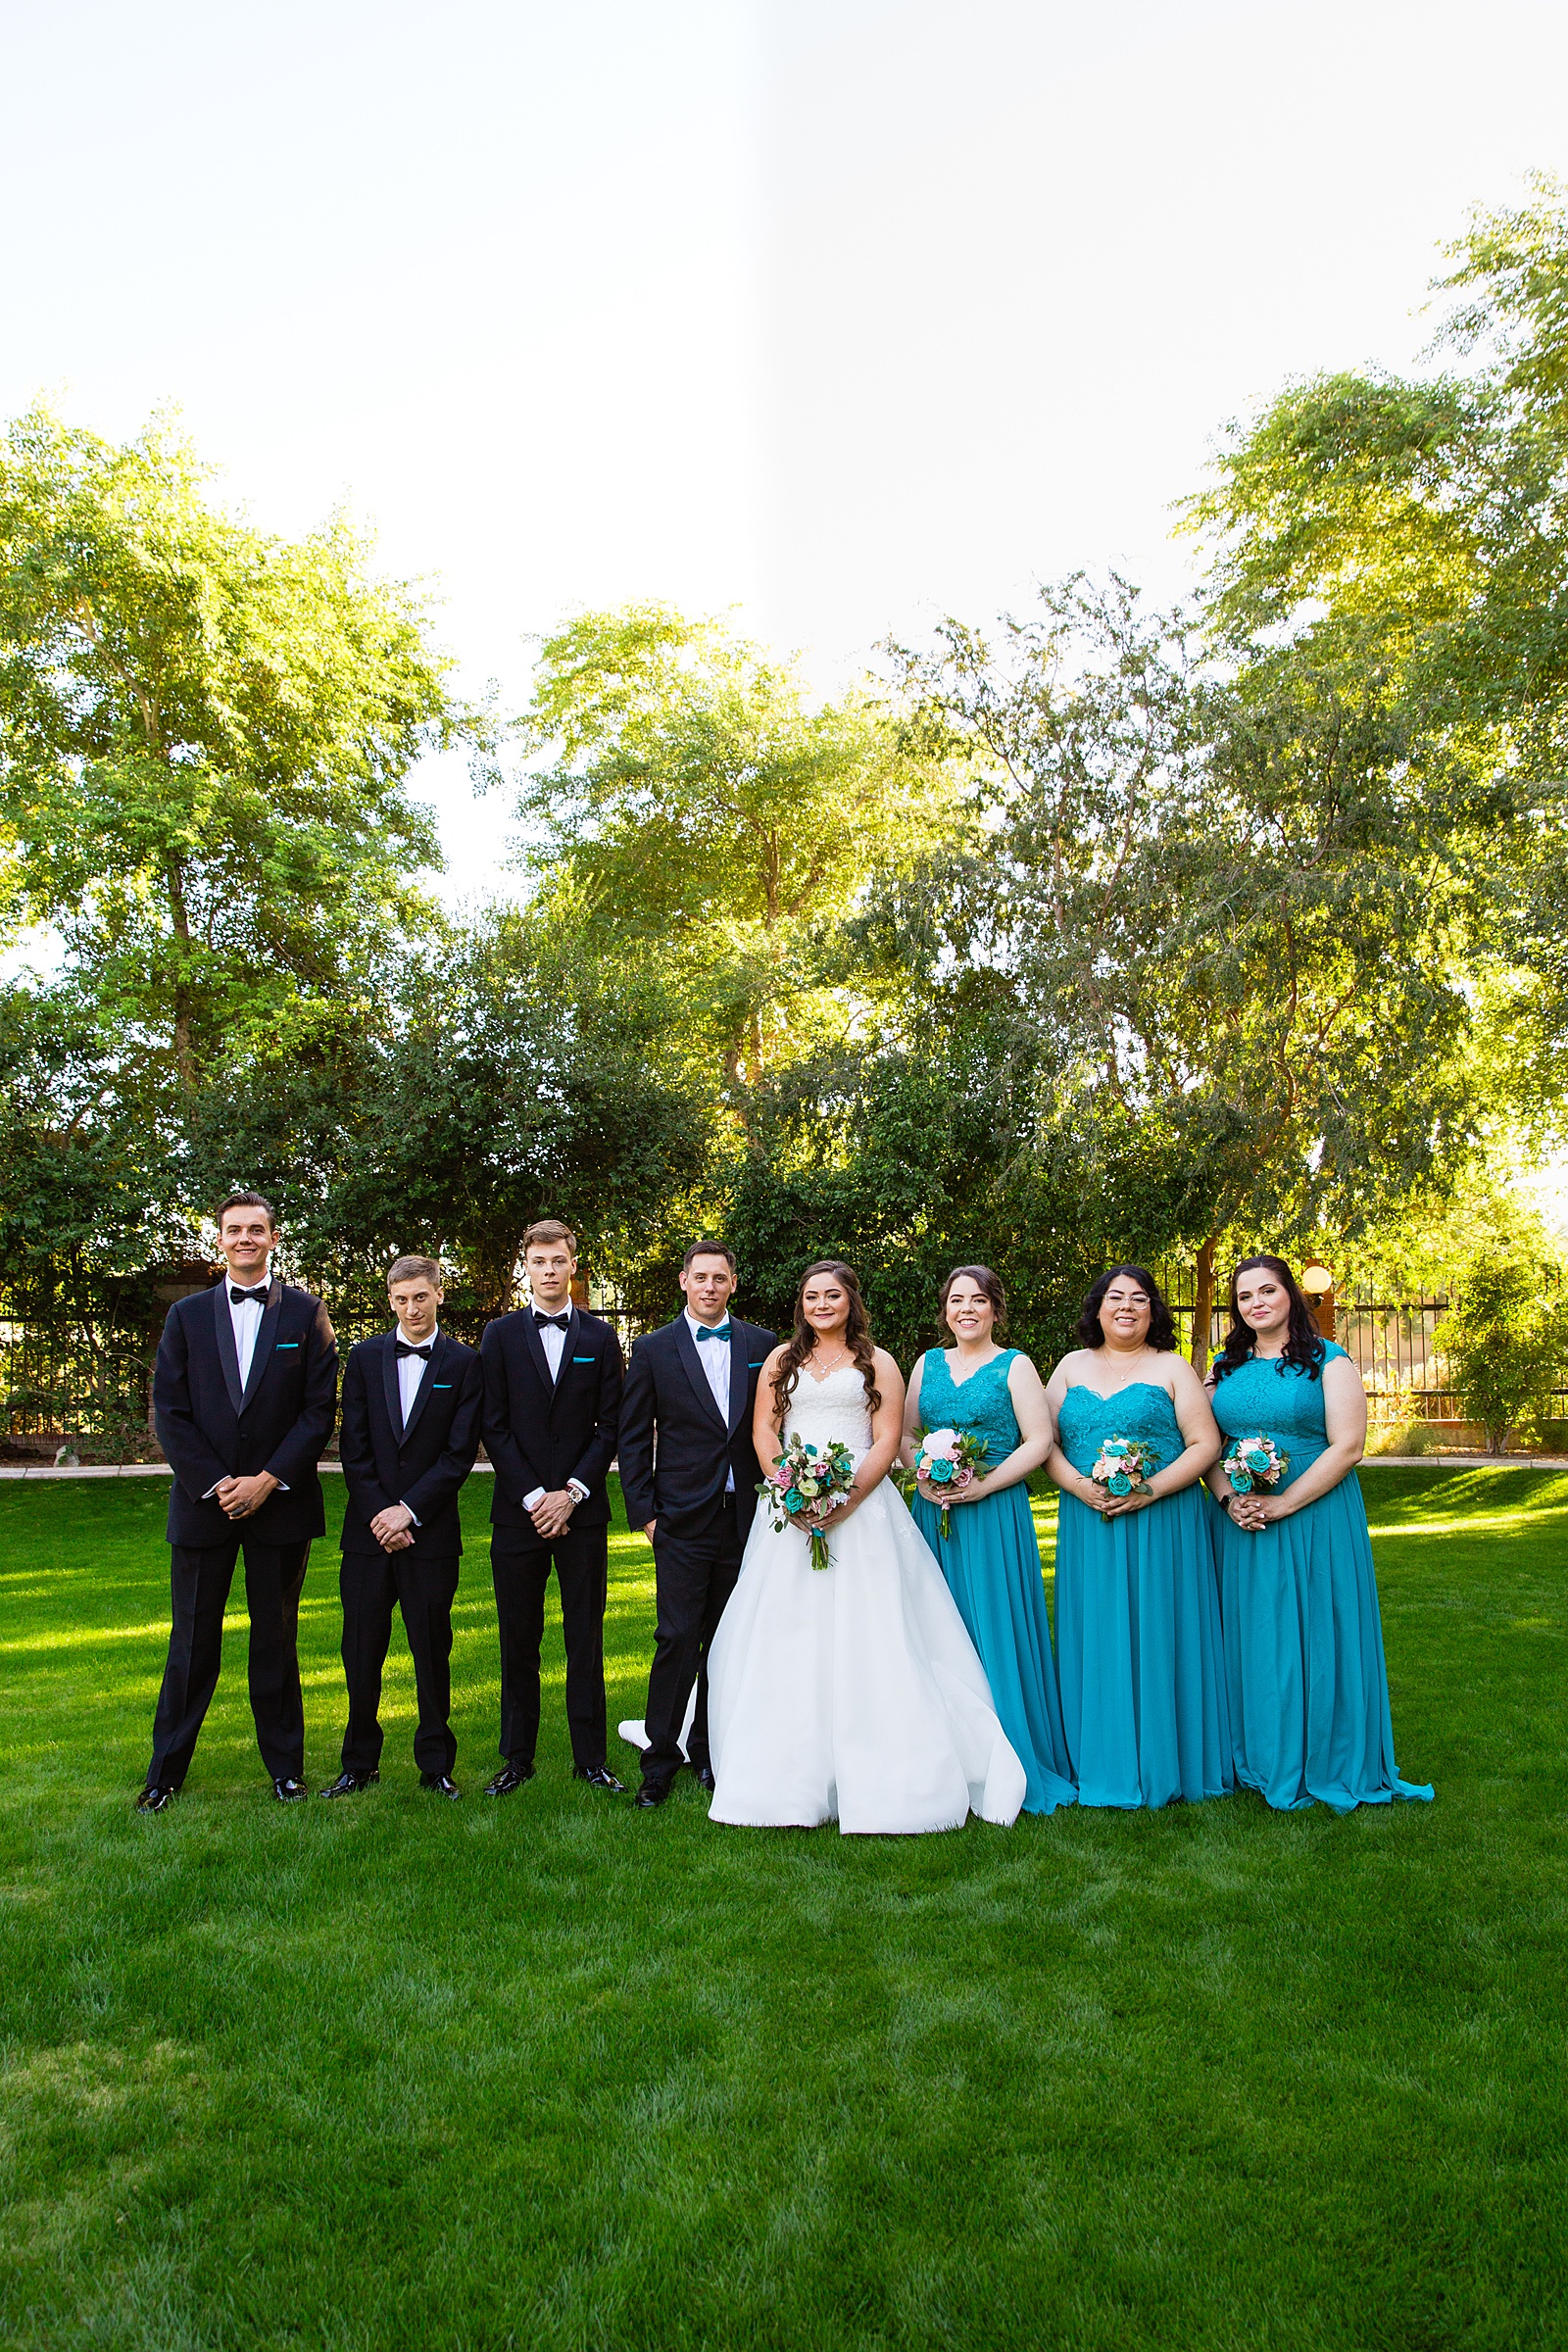 Bridal party together at a Stonebridge Manor wedding by Arizona wedding photographer PMA Photography.